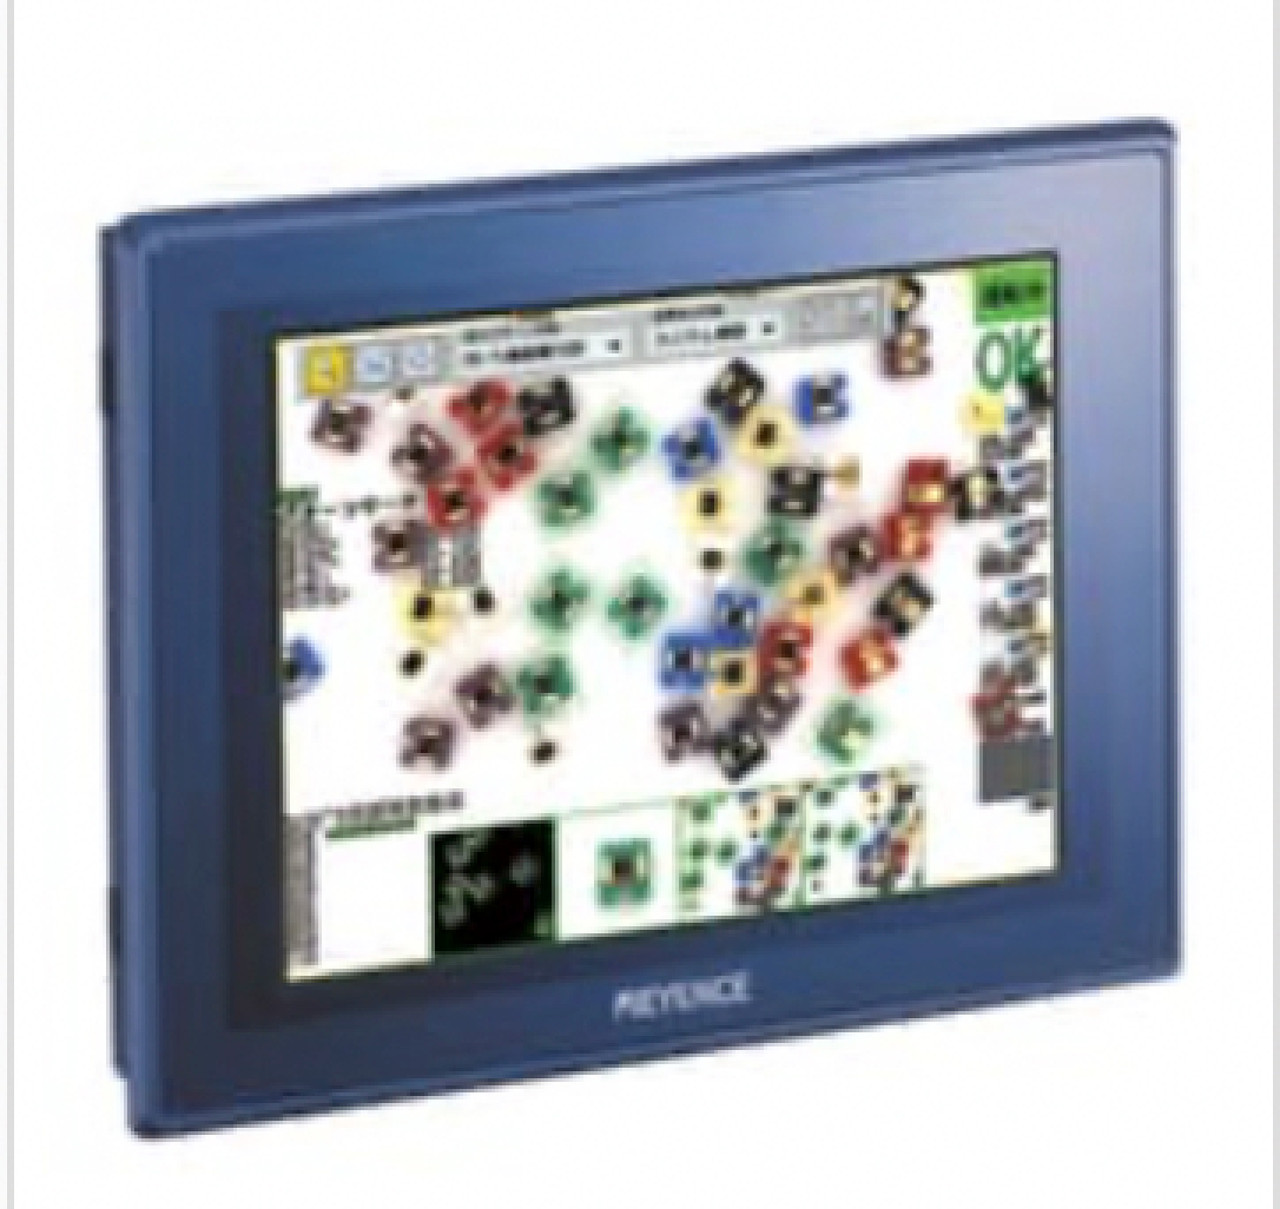 Keyence CA-MP80 Color LCD Monitor, 8.4-inch LCD Color Monitor (Analog SVGA) [Refurbished]